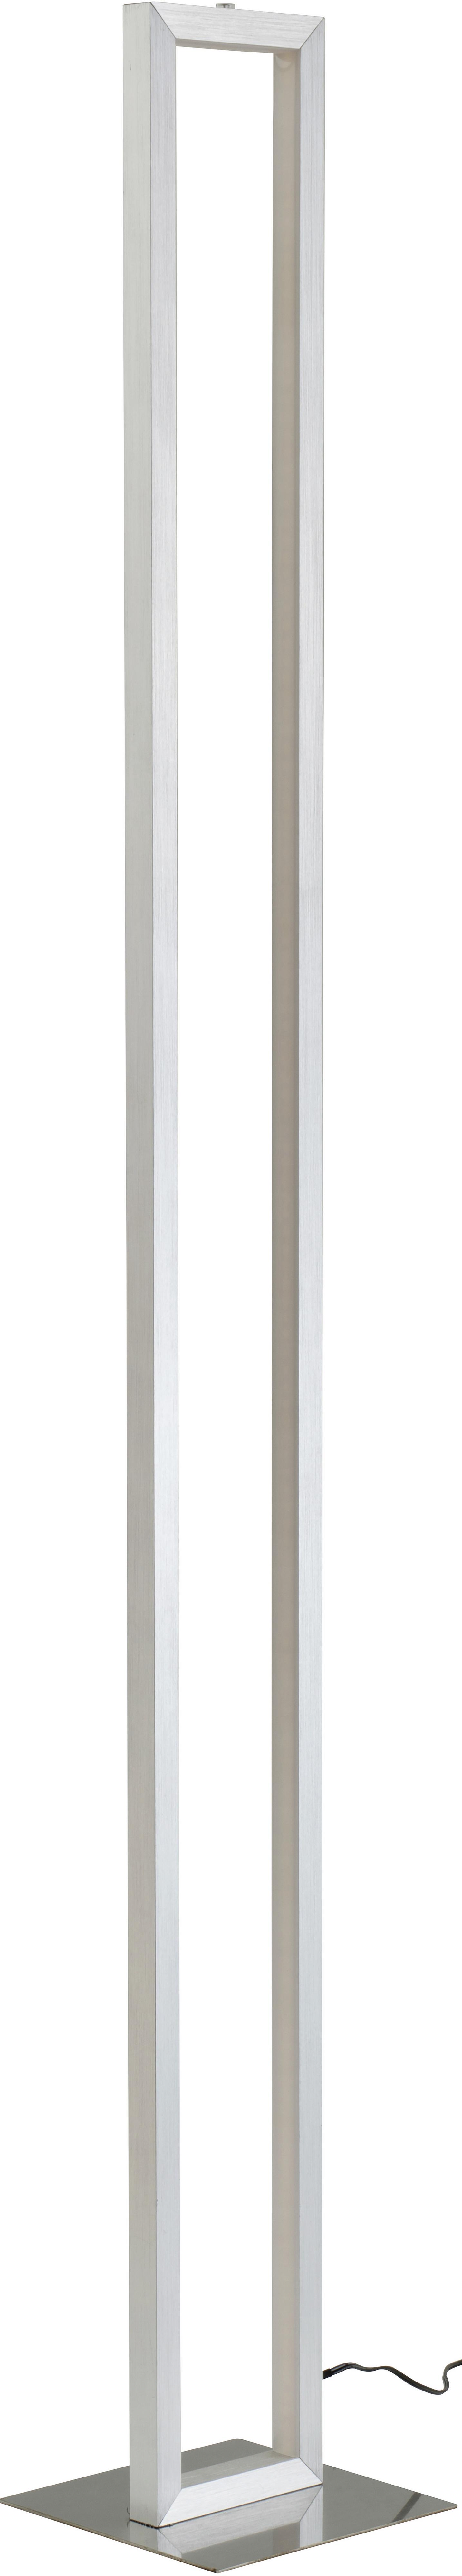 LED-Stehleuchte Erion max. 18 Watt - weiss/Alufarben, Konventionell, Kunststoff/Metall (16/16/120cm) - Premium Living